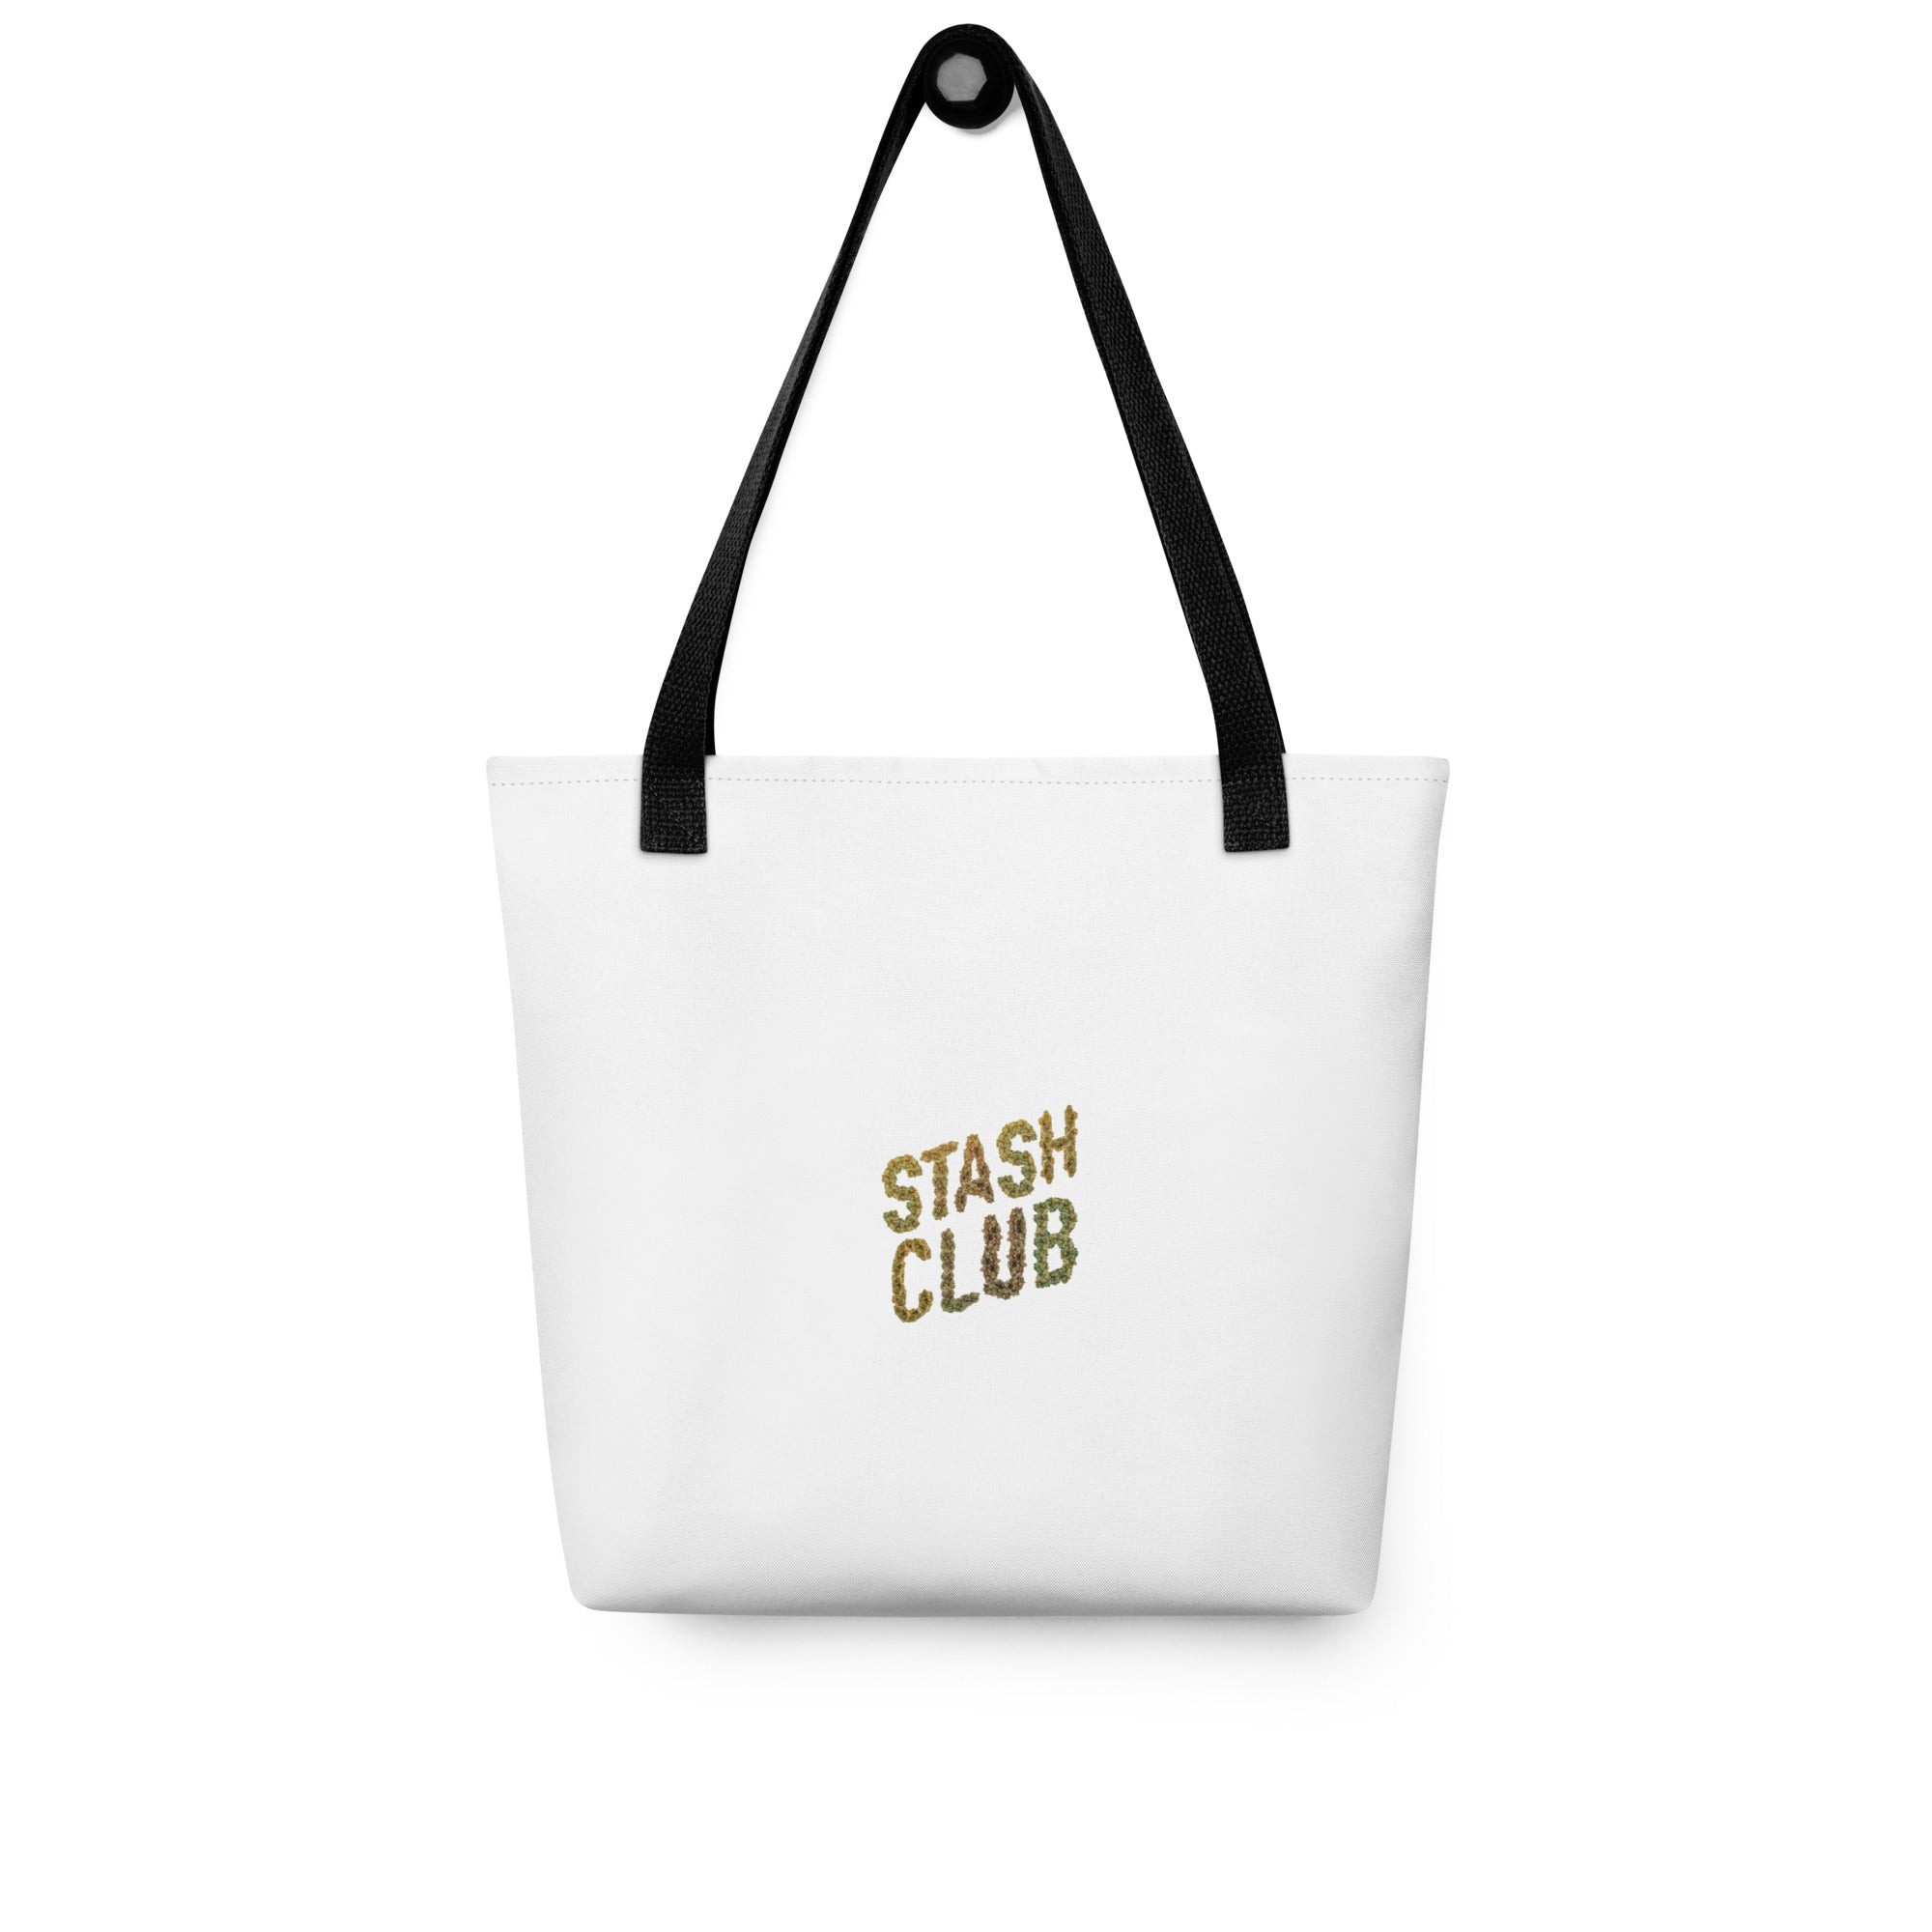 Stash Club Tote Bag